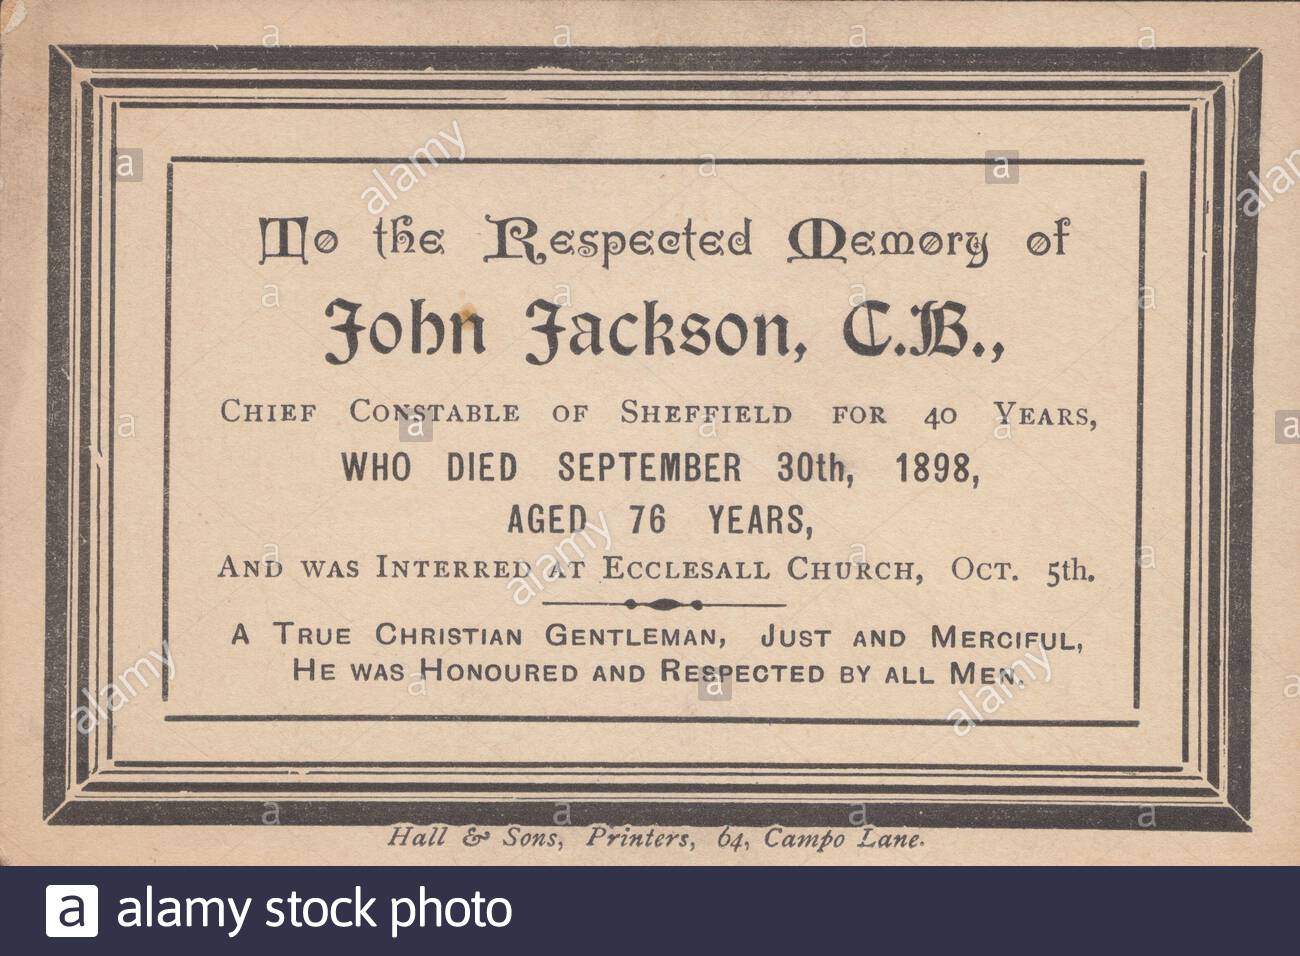 in memoriam karte fur john jackson cb der polizeichef von sheffield fur 40 jahre starb am 30 september 1898 im alter von 76 jahren und wurde beerdigt in ecclesall kirche oct 5 2adyw8c